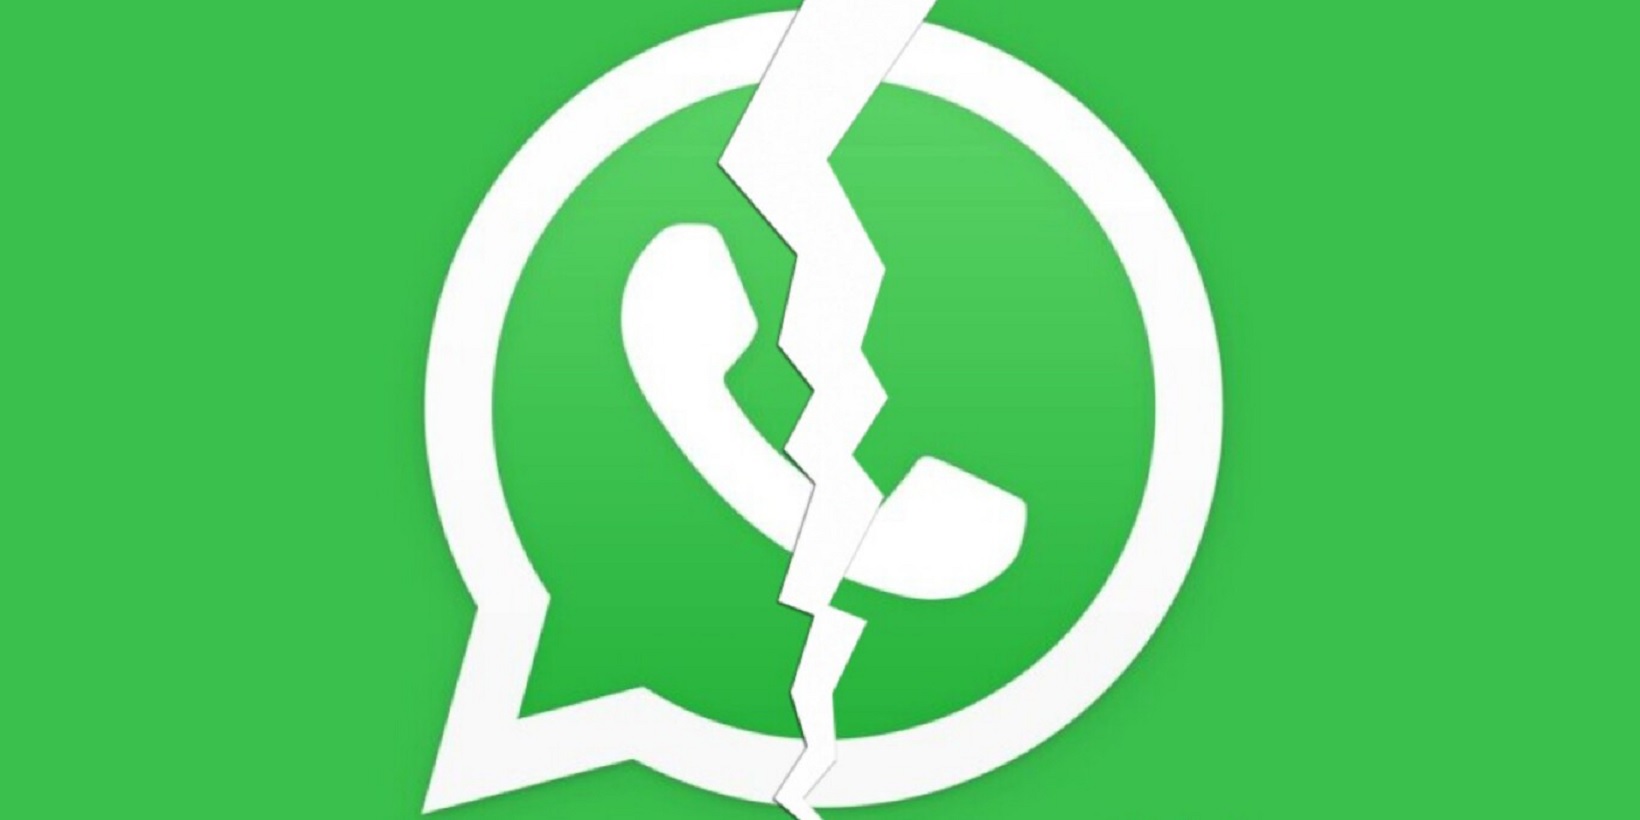 WhatsApp ne fonctionne plus ? Voici pourquoi et comment y accéder à nouveau